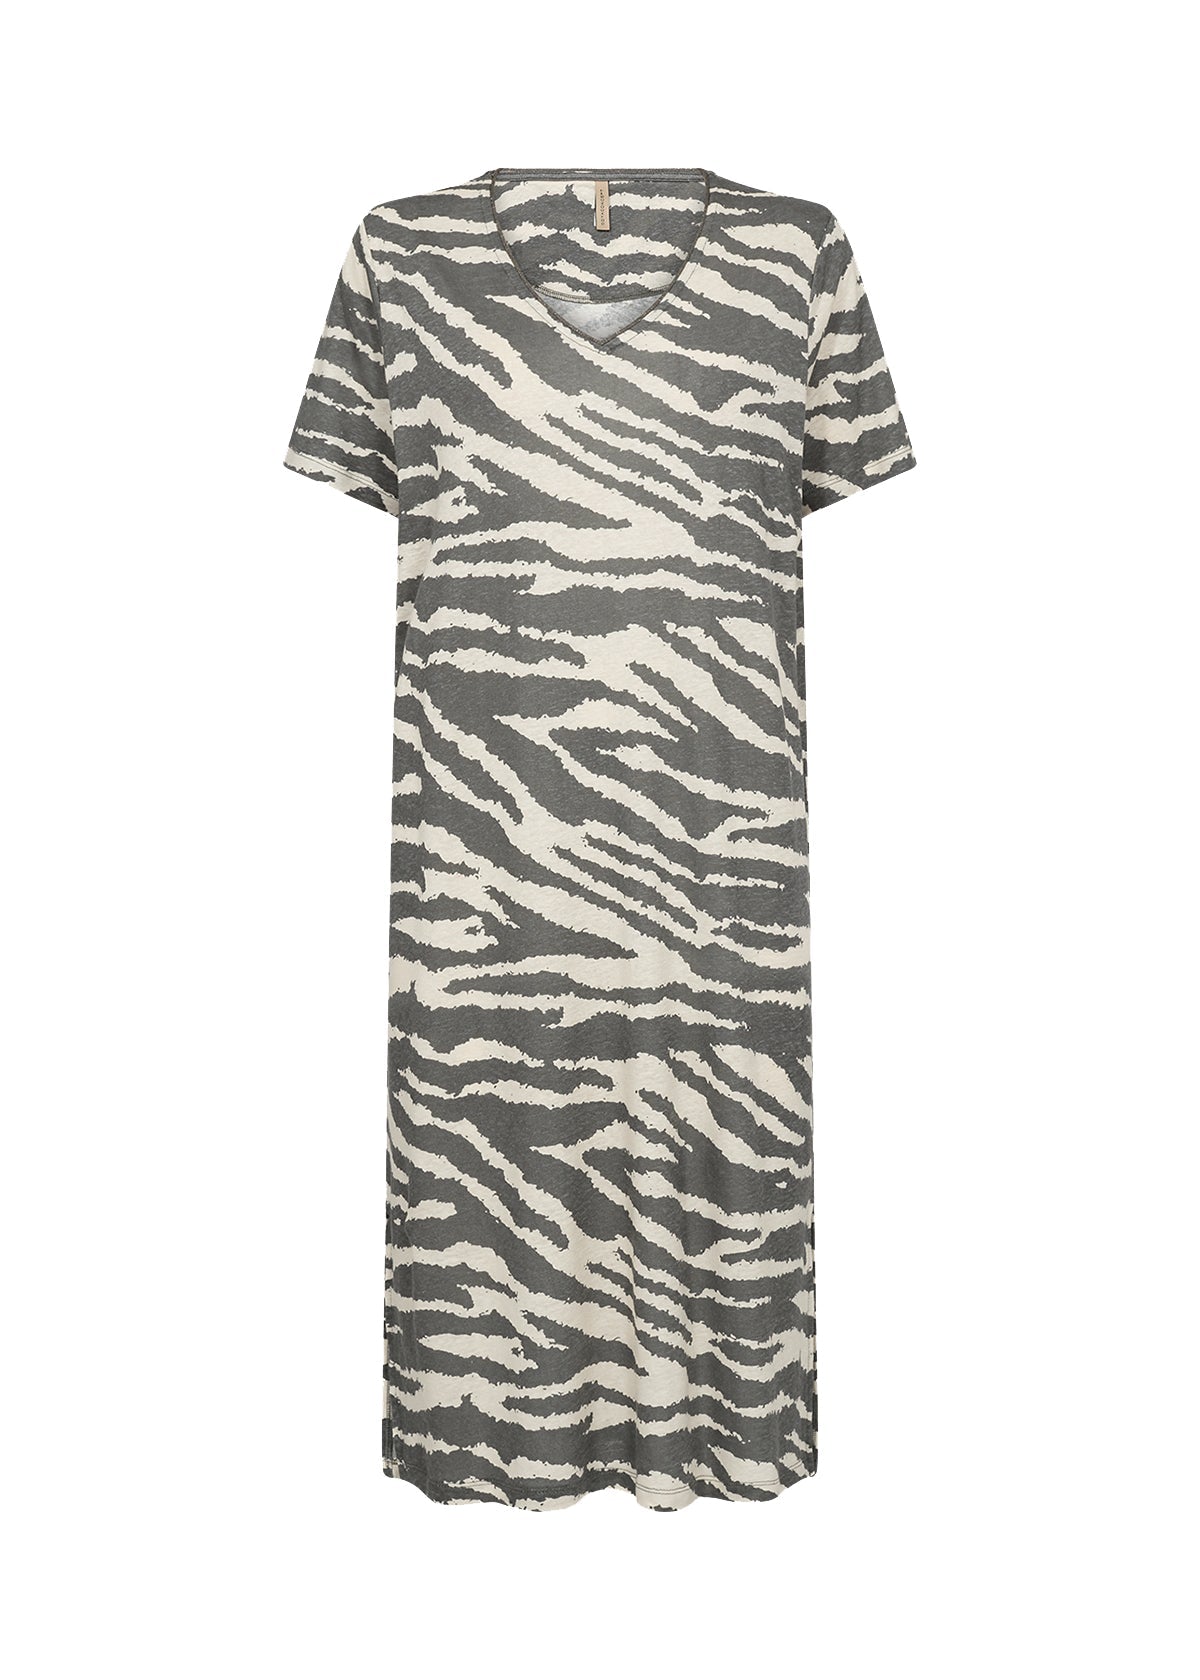 SC Mist Zebra Lenise Dress